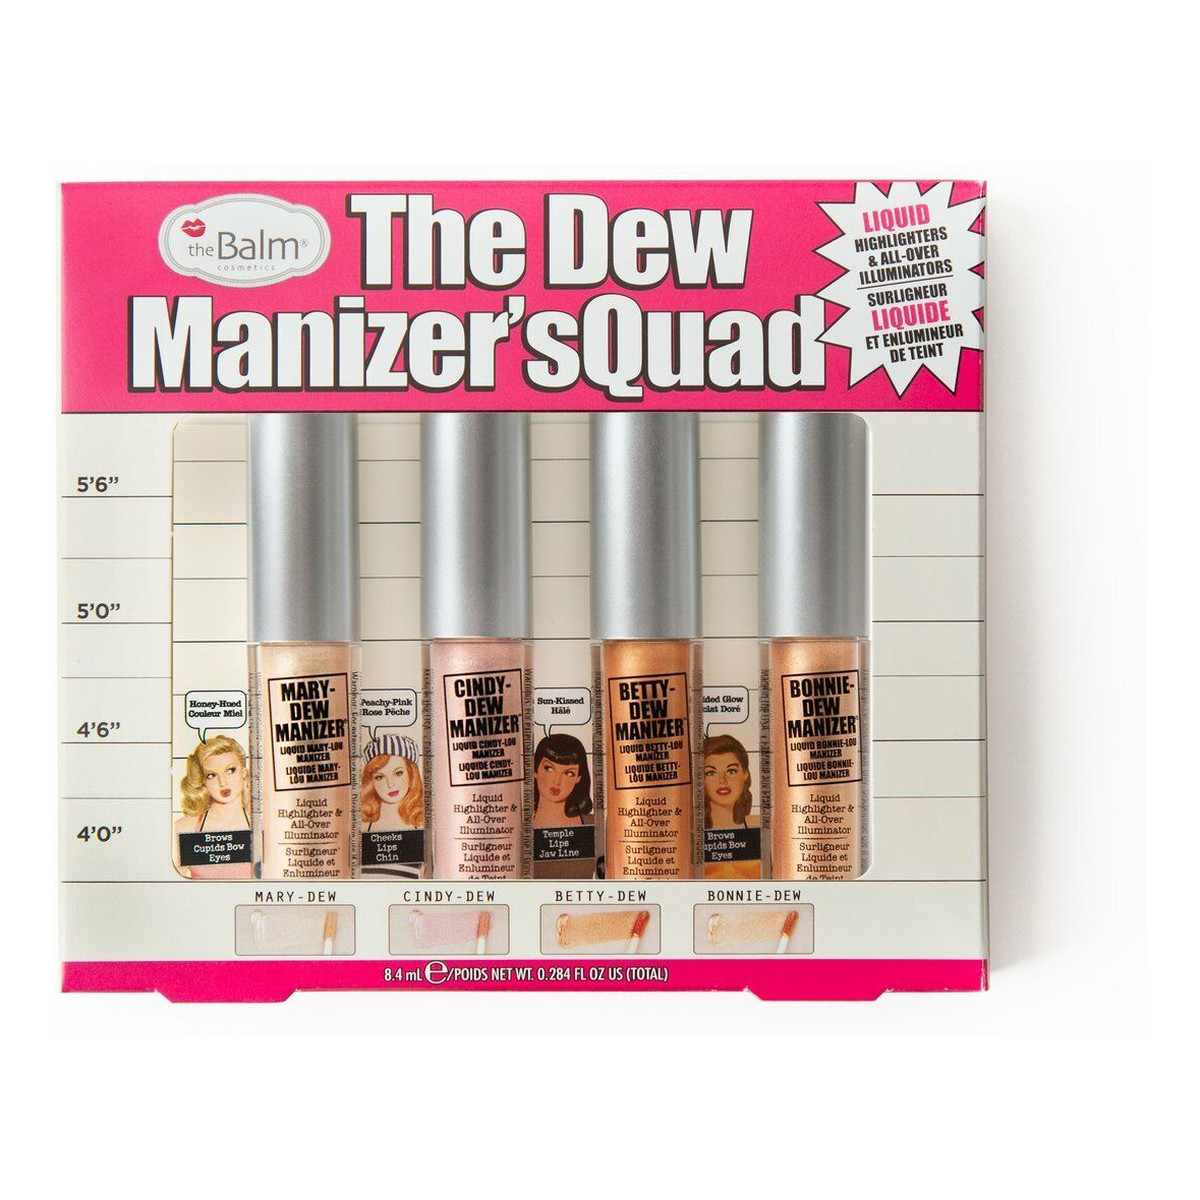 the Balm The Dew Manizer's Quad Zestaw płynnych rozświetlaczy do makijażu 8ml